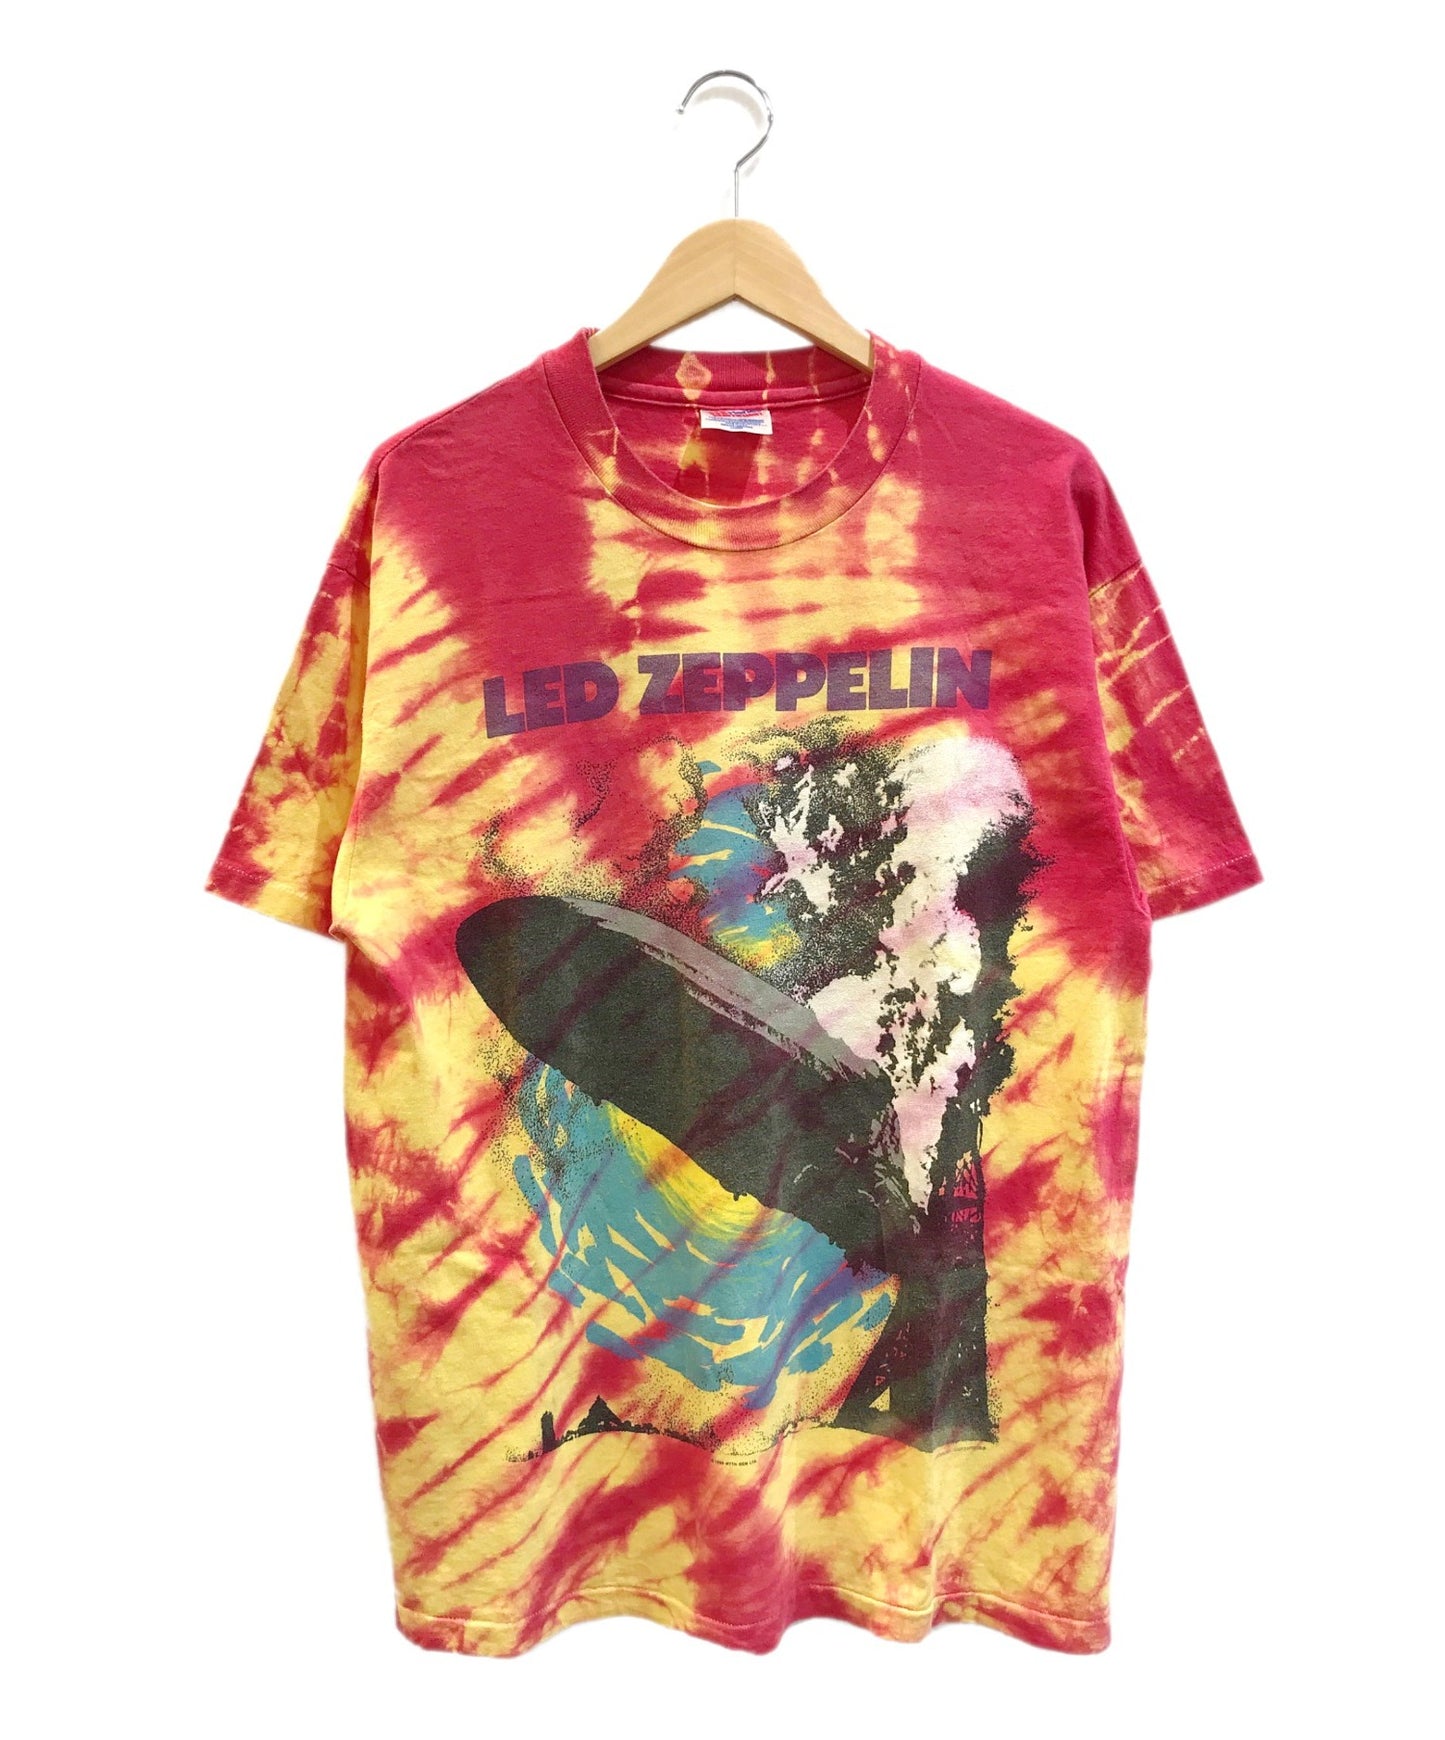 [빈티지 옷] 90 년대 Led Zeppelin Band 티셔츠